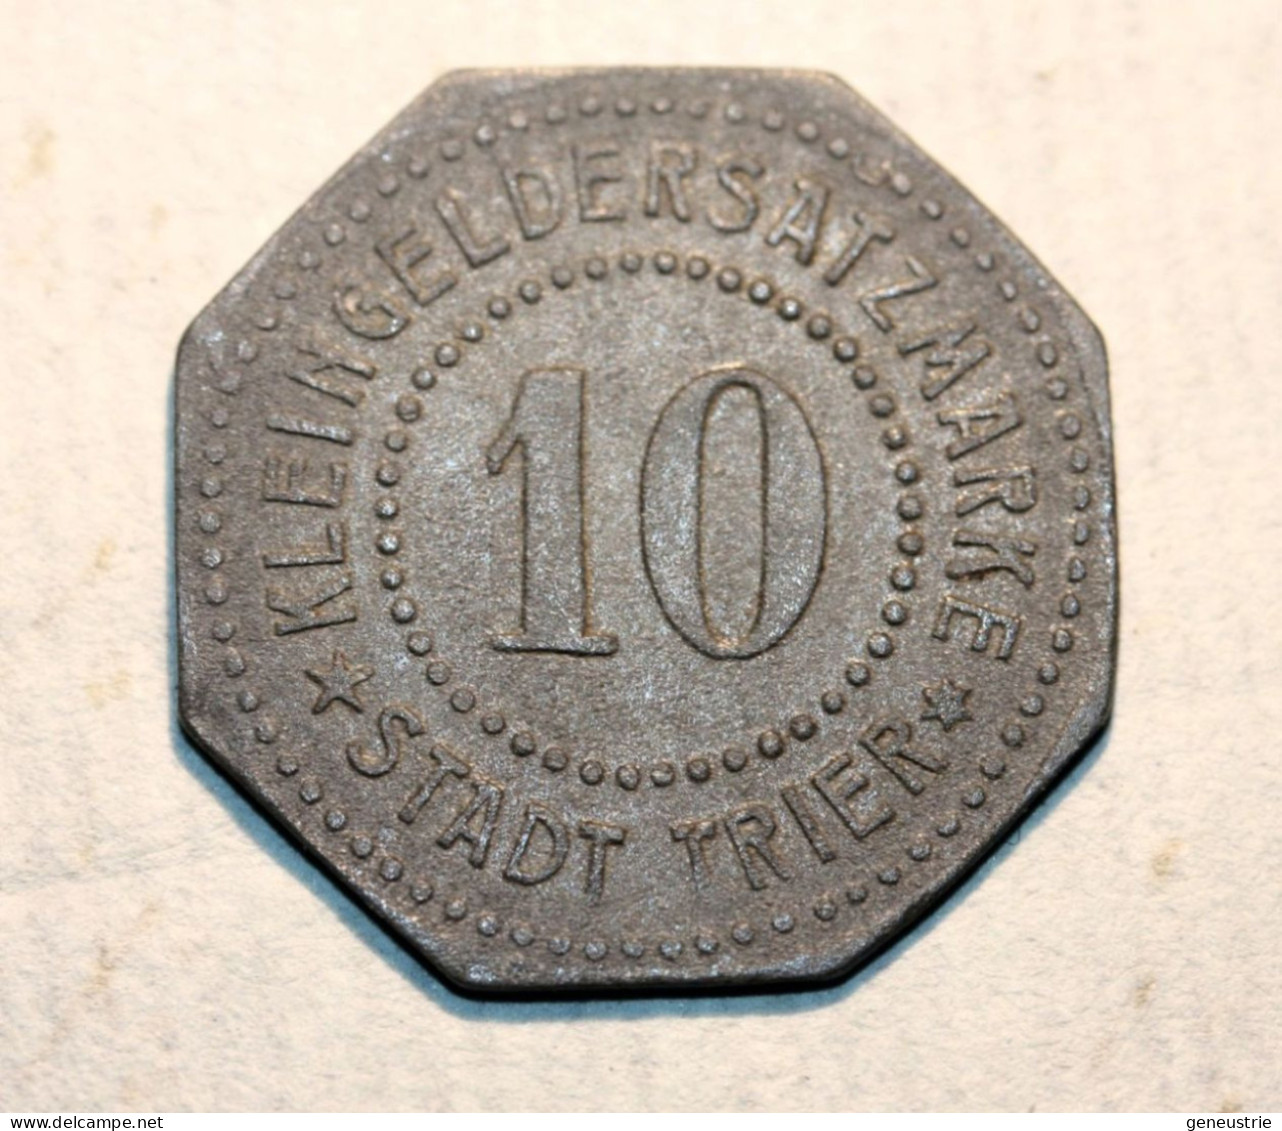 WWI Monnaie Jeton De Necessité De La Ville De Trêves "10 Stadt Trier" German Emergency Token WW1 - Monetari/ Di Necessità